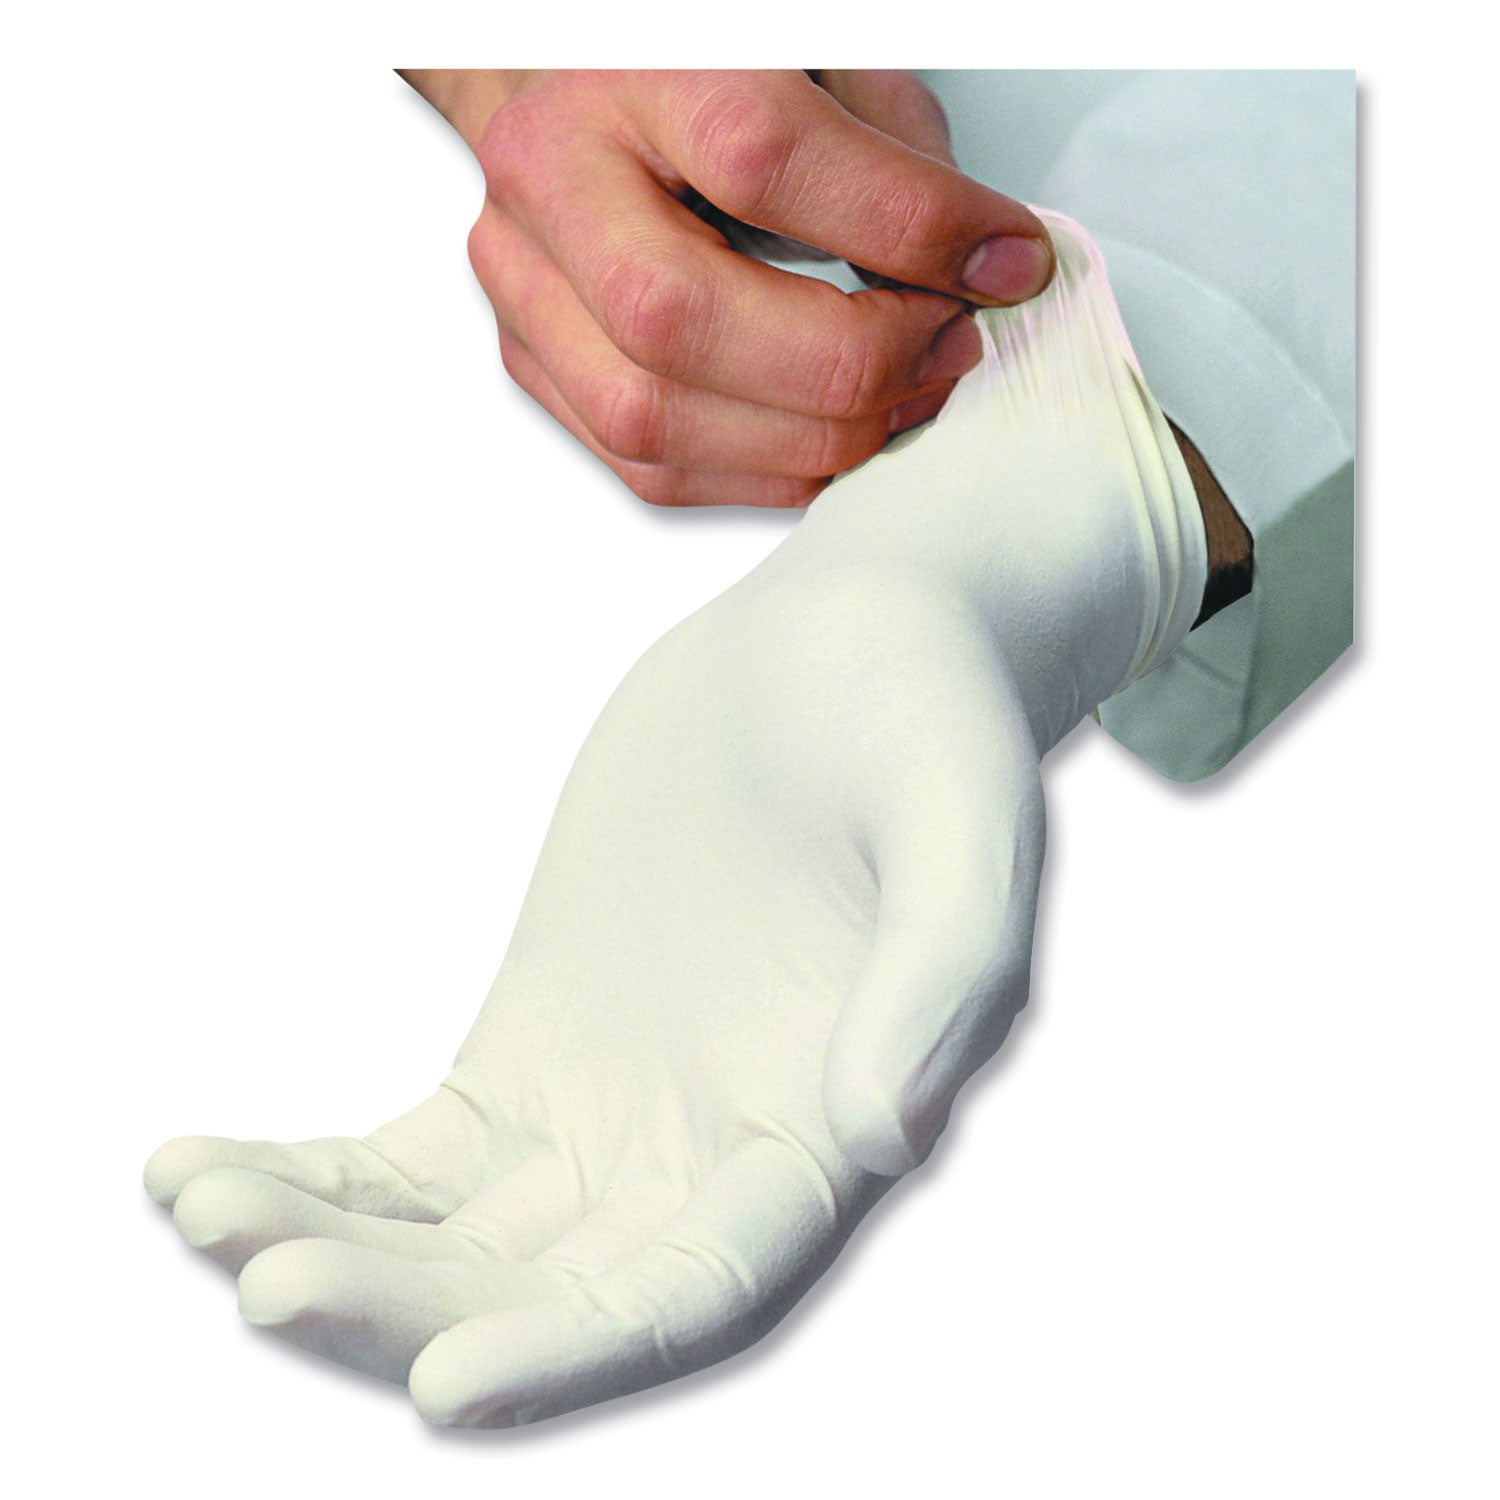 l5101-series-powdered-latex-gloves-4-mil-x-large-cream-100-box_txilxl5101 - 1